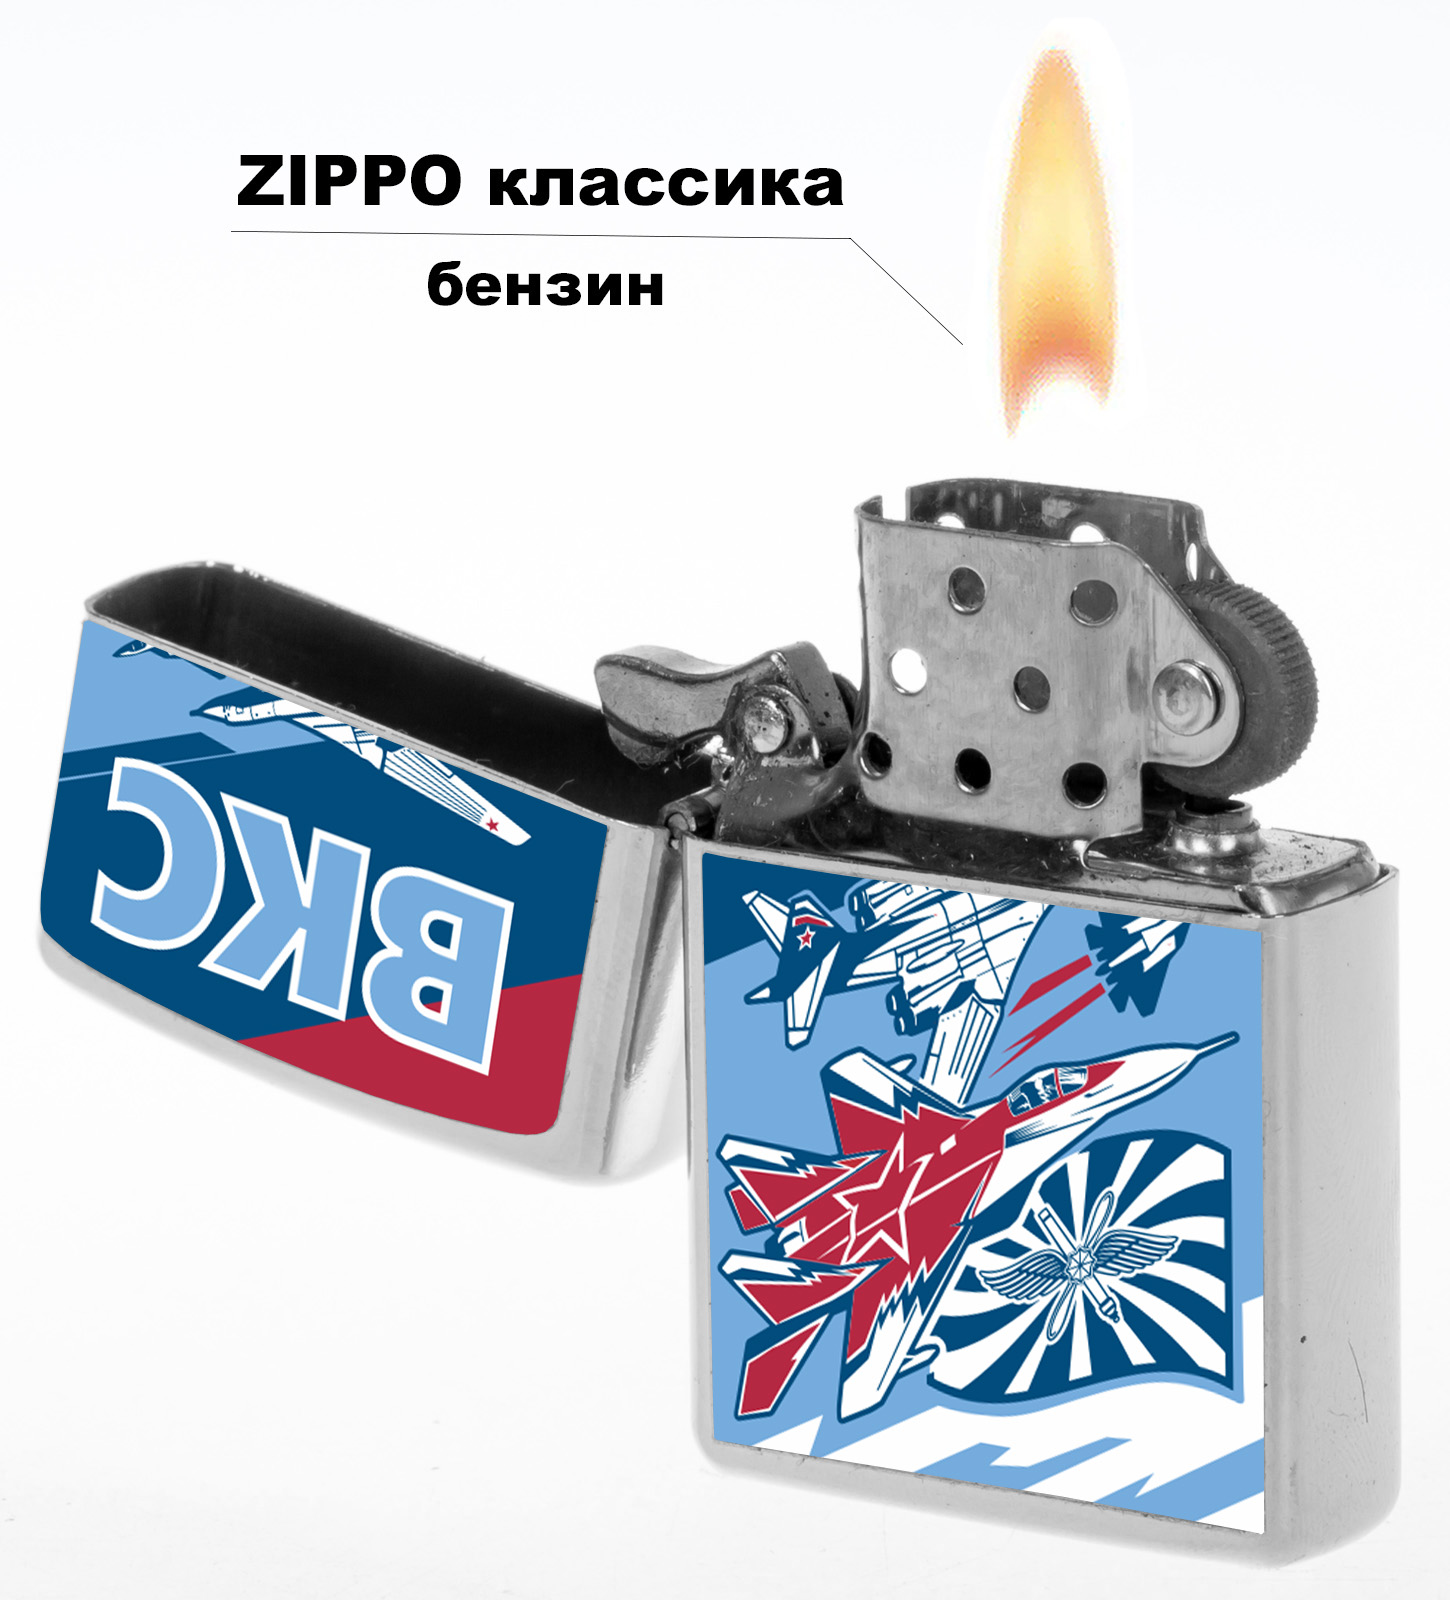 Подарочная зажигалка с символикой ВКС 